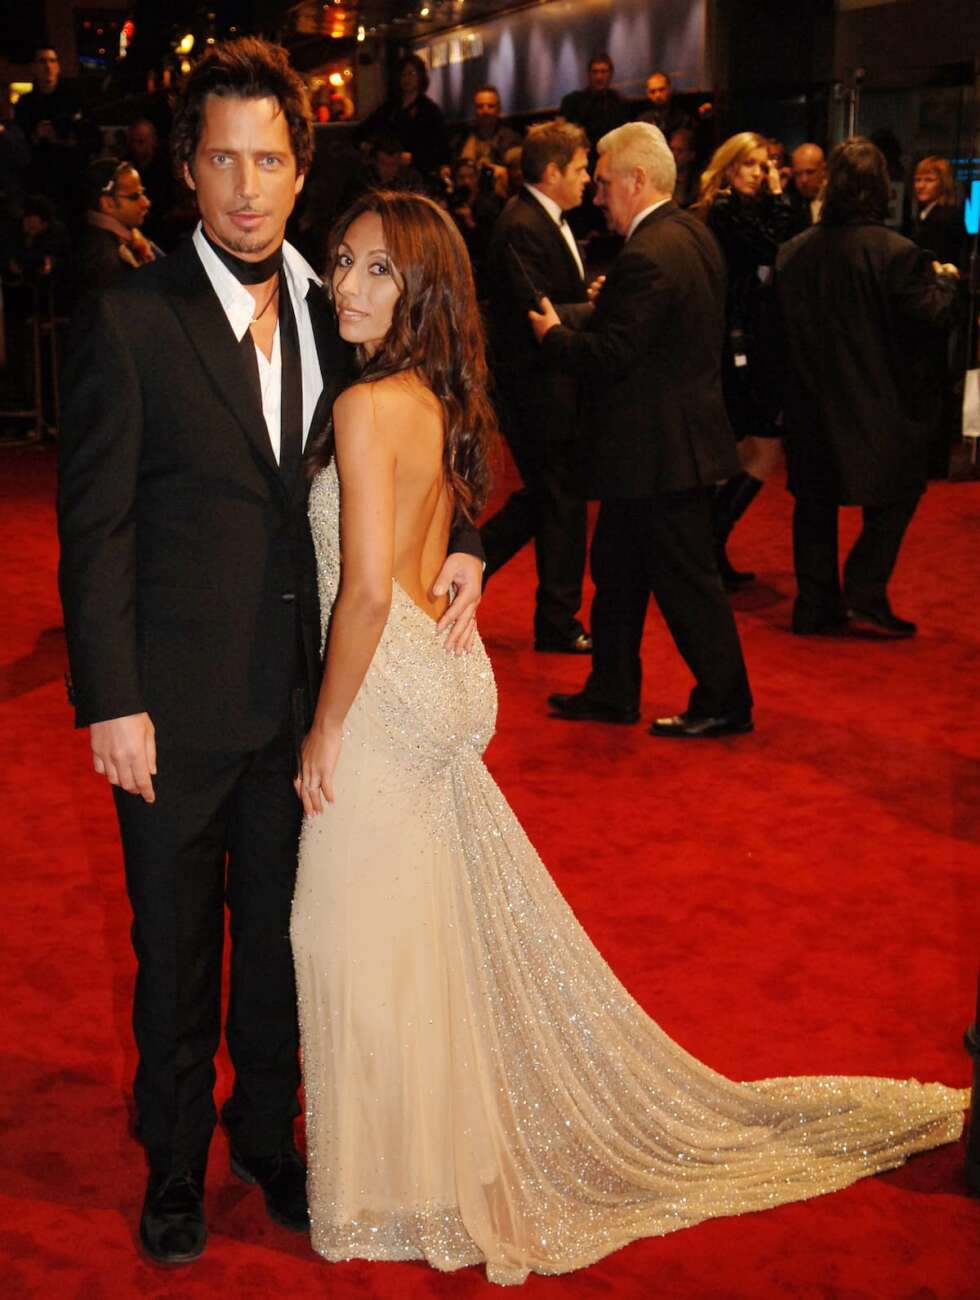 Chris Cornell mit Ehefrau auf dem roten Teppich